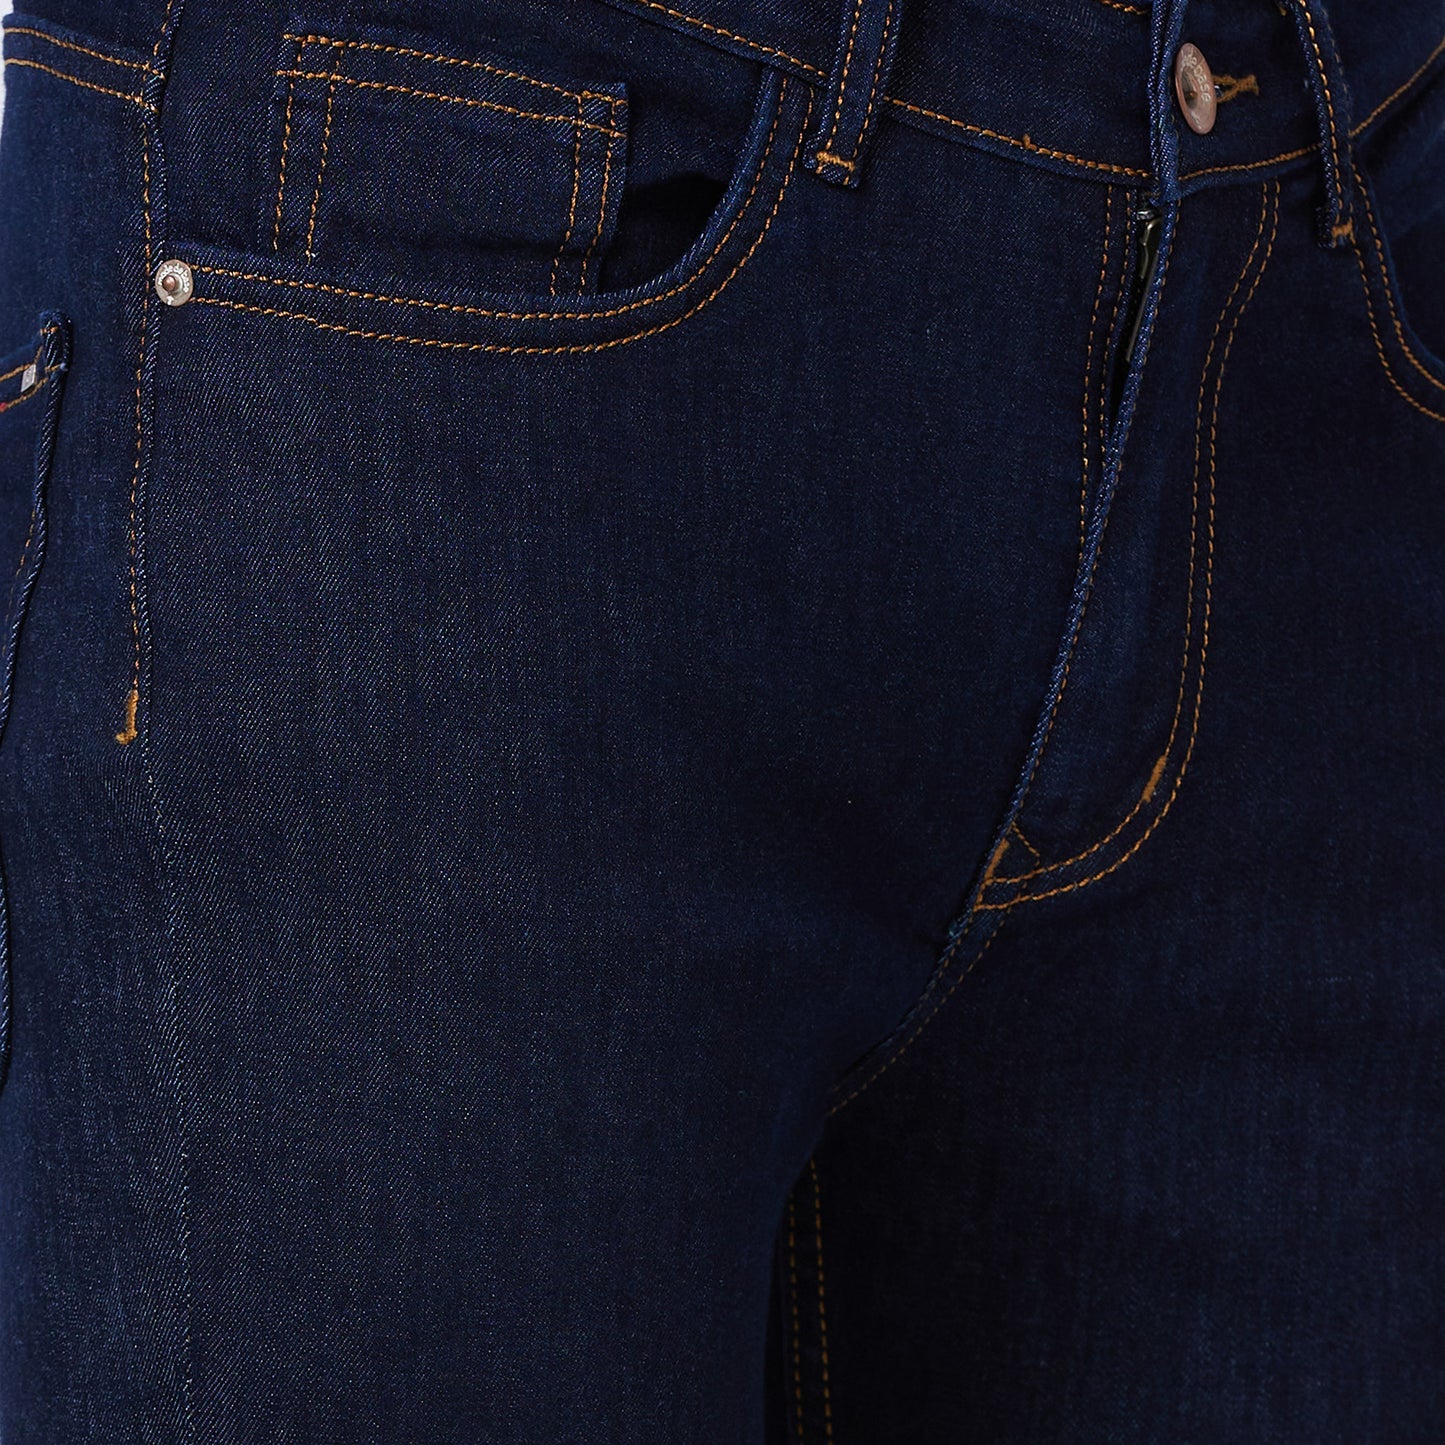 Boot-cut Denim Jeans With Rust Stitch.